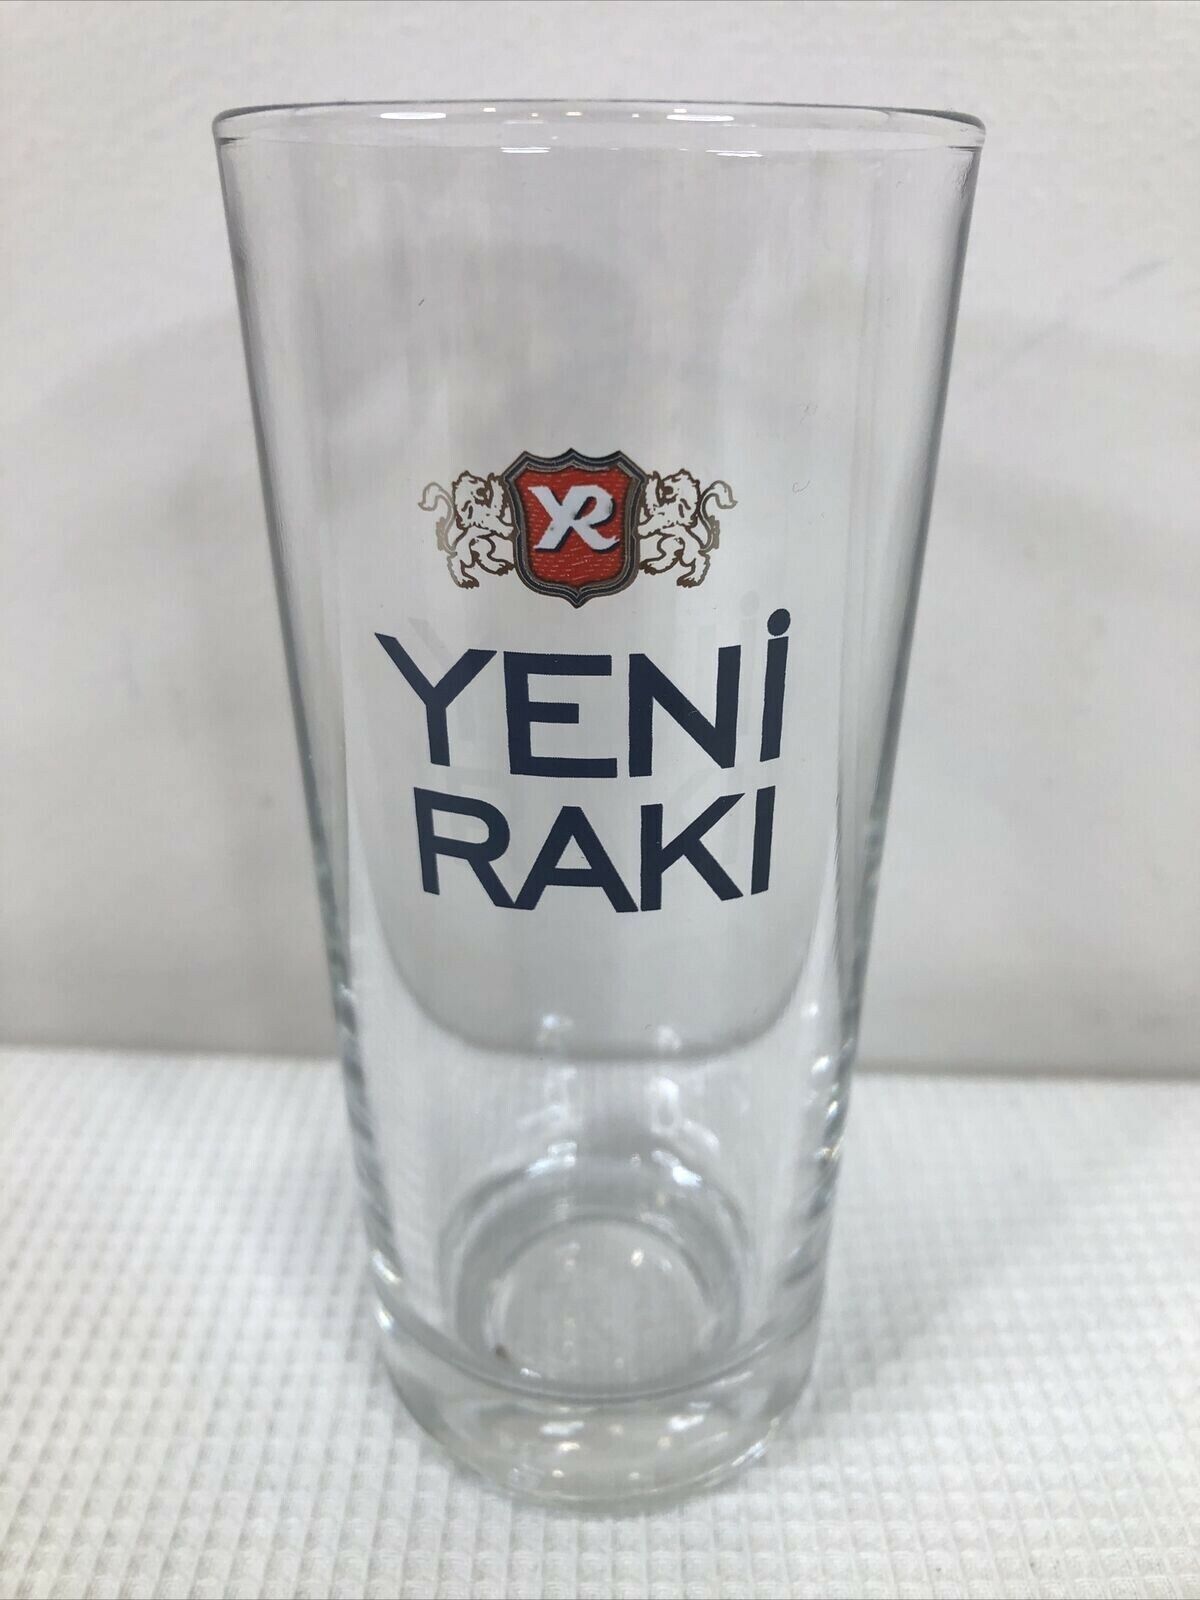 YENI RAKI 4 Oz Turkish Raki Drinking Glass EUC Barware Man Cave